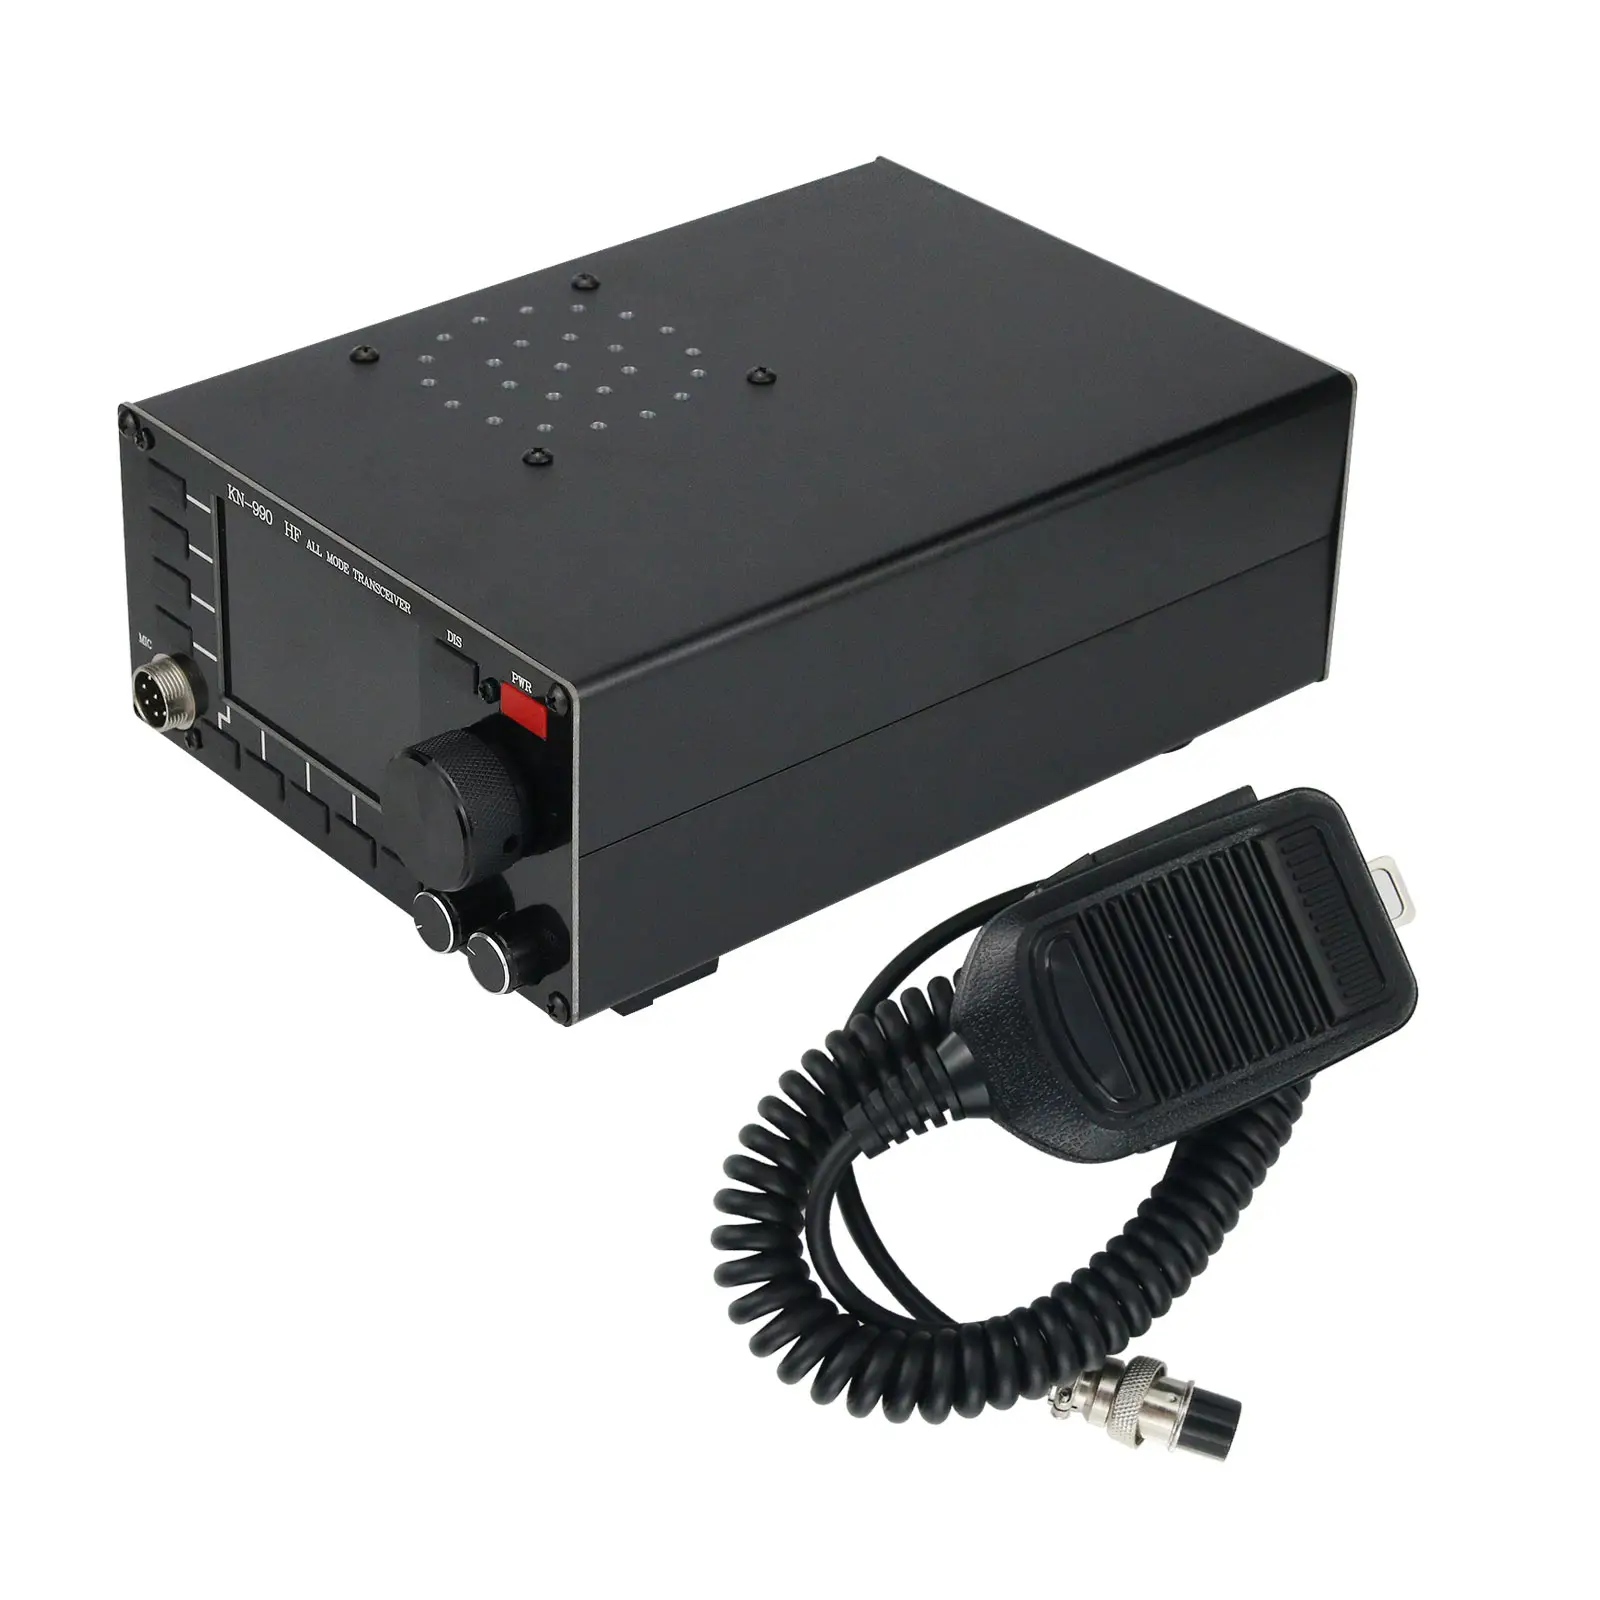 KN990 HF ทุกโหมดรับส่งสัญญาณ SSB/CW/AM/FM/โหมดการทำงานดิจิตอลรับส่งสัญญาณคลื่น